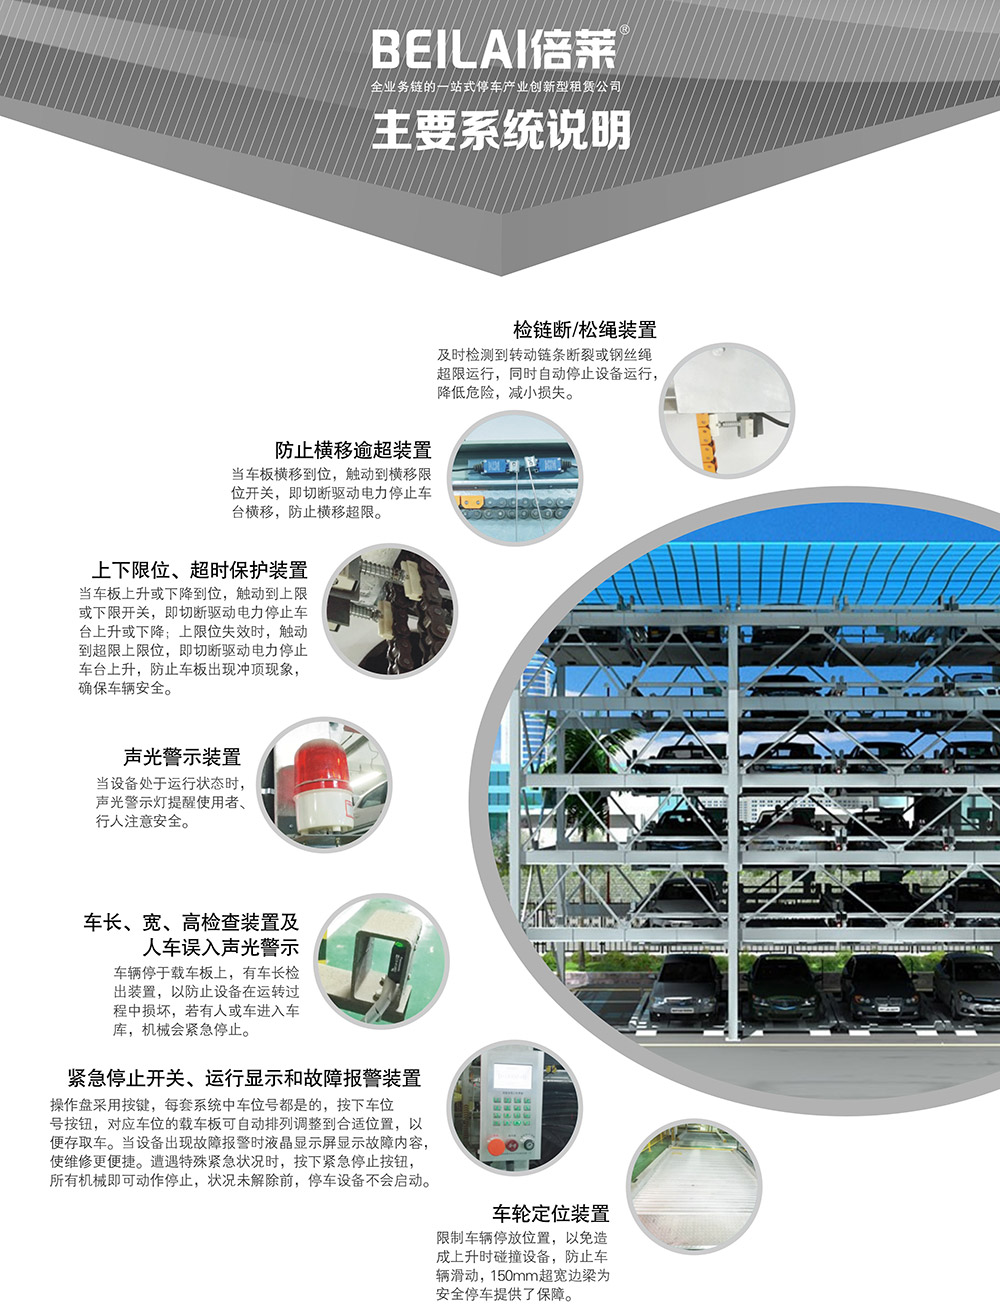 成都重庆四至六层PSH4-6升降横移立体车库设备主要系统说明.jpg